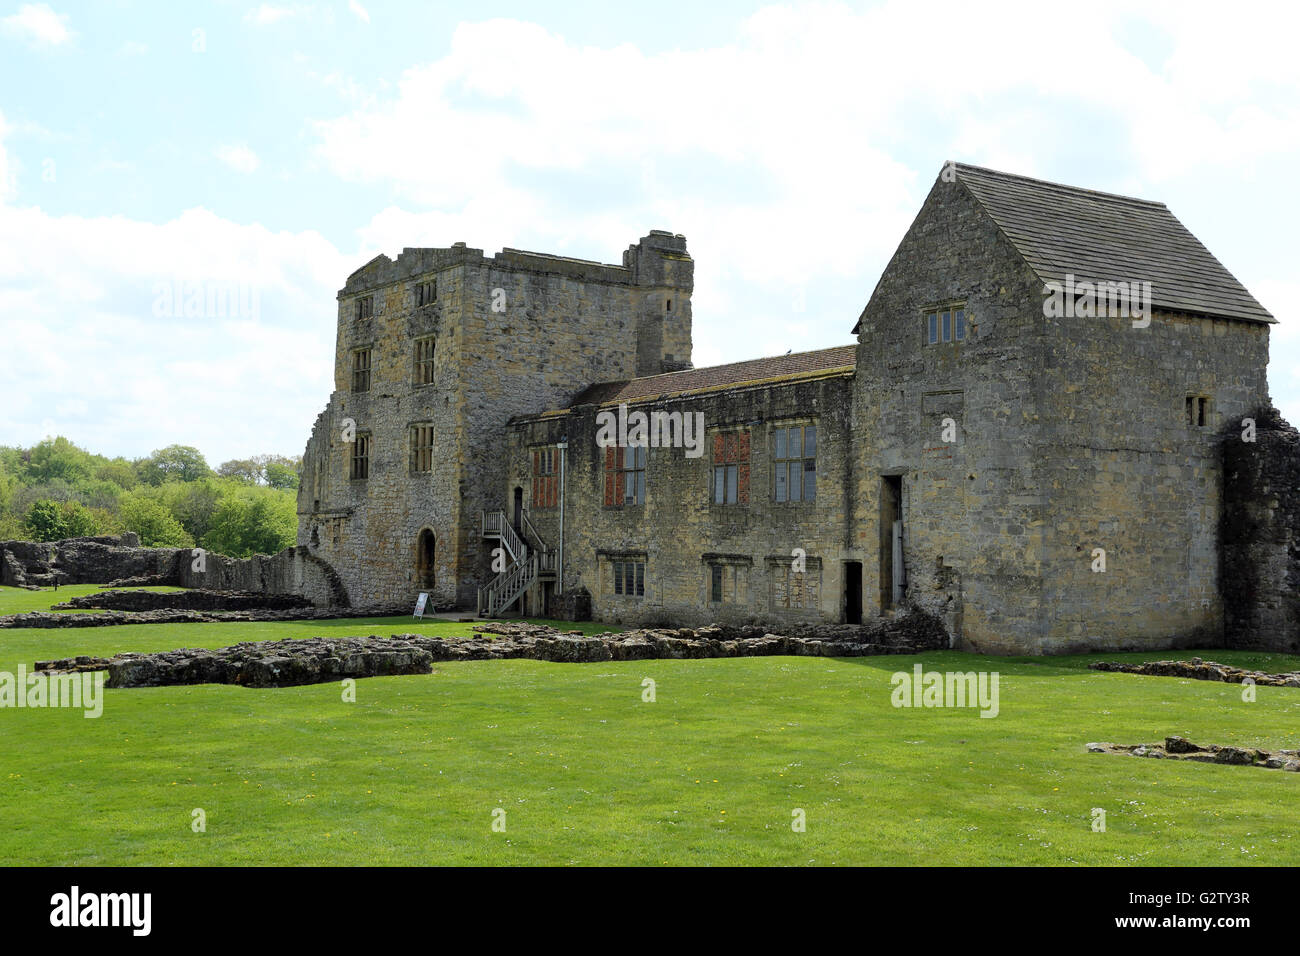 Castello di Helmsley, un castello medievale nella pittoresca cittadina di mercato di Helmsley, North Yorkshire, Inghilterra, Regno Unito Foto Stock